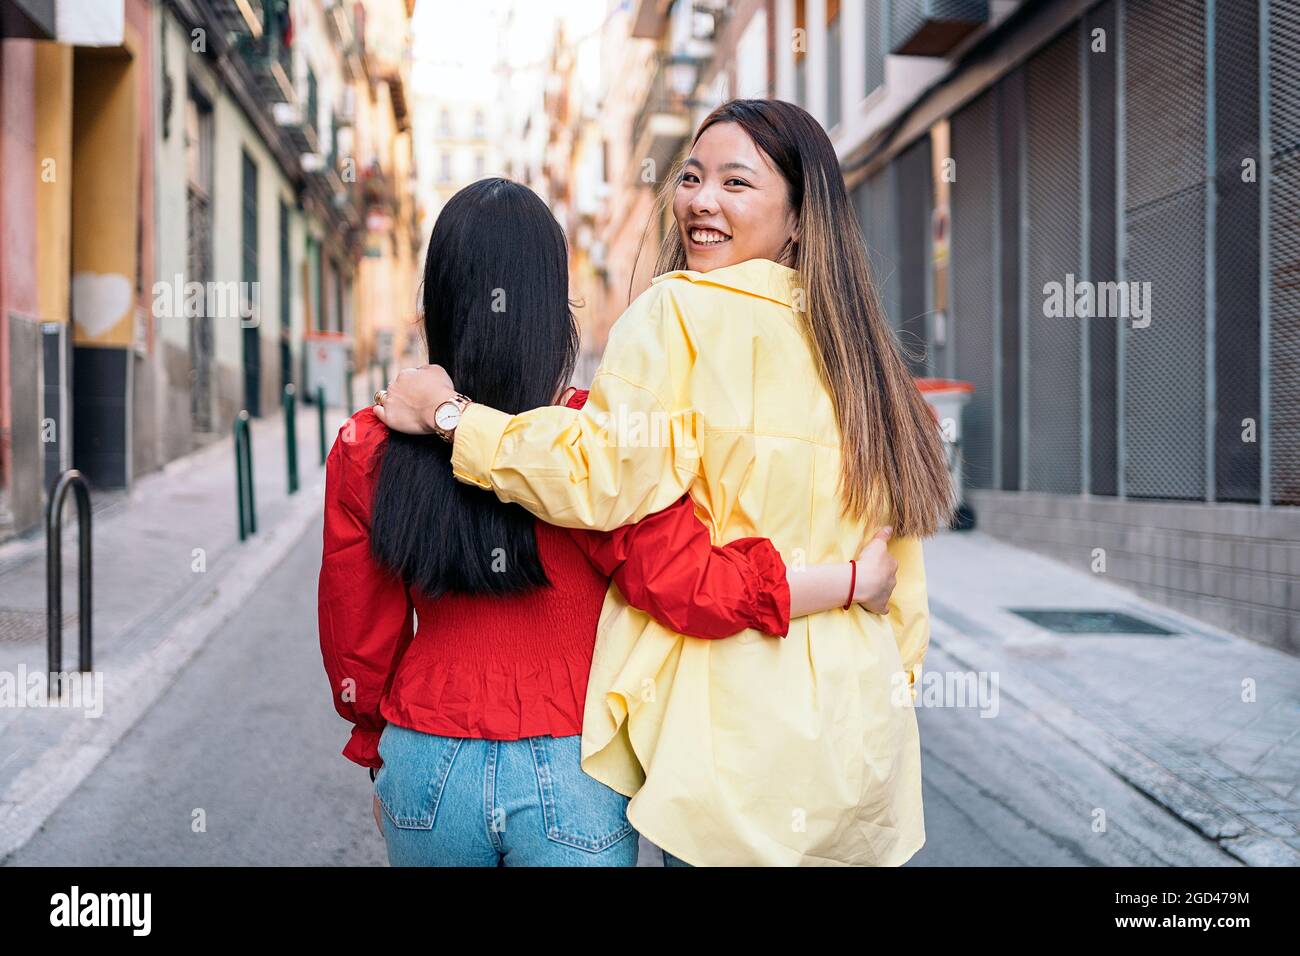 Hübsche asiatische Frau, die sich in den Straßen Madrids amüsieren und ihre Freundin umarmen kann. Stockfoto